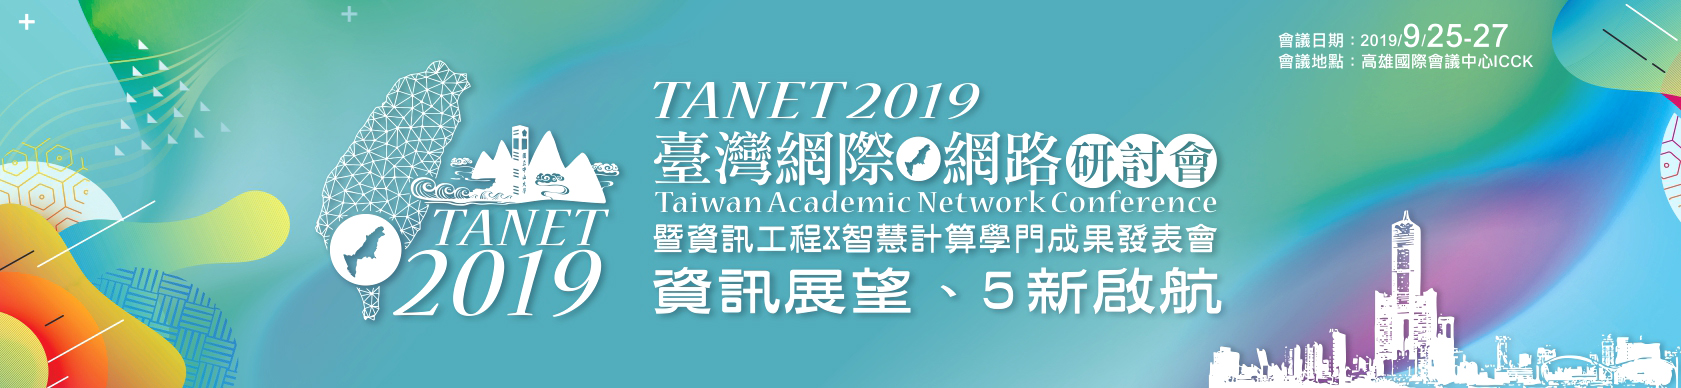 TANET 2019 - 臺灣網際網路研討會